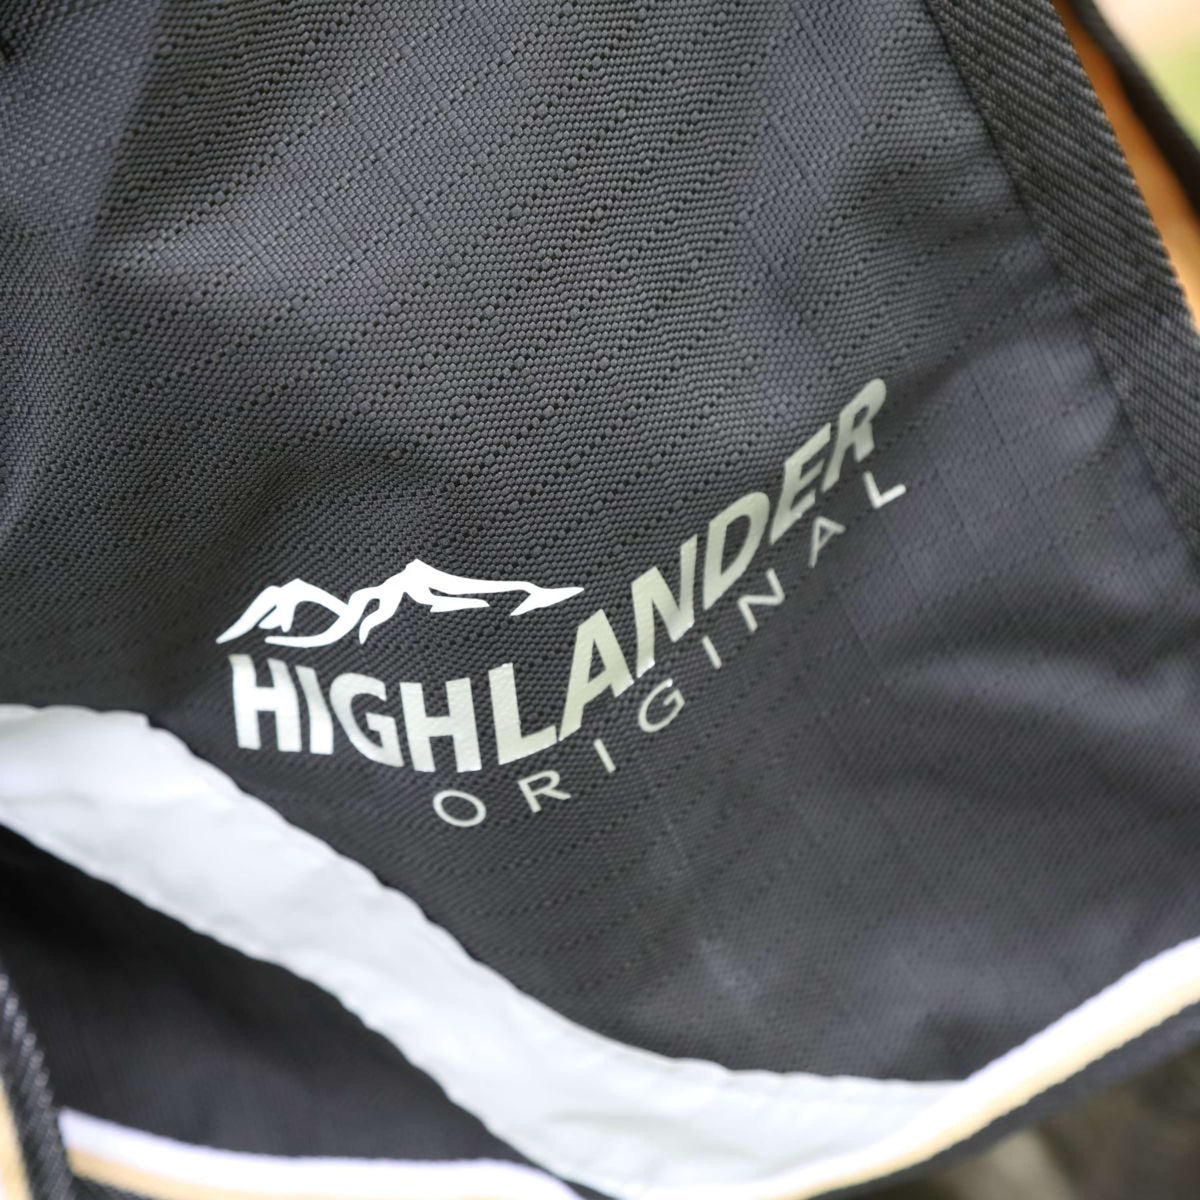 Highlander Plus Couverture d'Hiver Turnout 200g ensemble couverture et tour de cou Noir